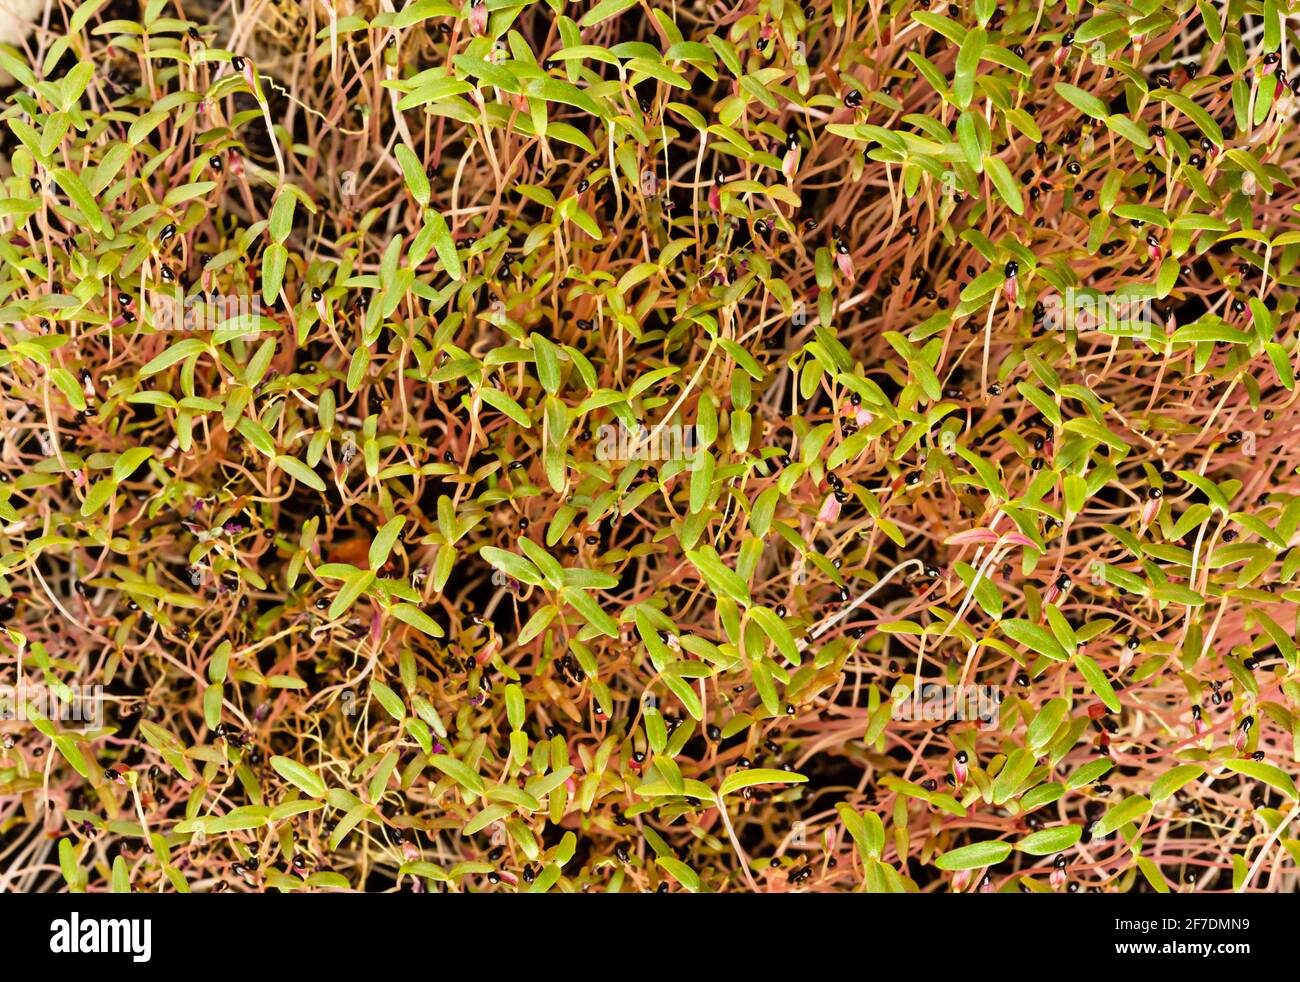 Brotes de amaranto con capas de semillas negras, desde arriba. Listo para comer Amaranthus microgreens. Brotes verdes, plántulas, plantas jóvenes y hojas. Foto de stock